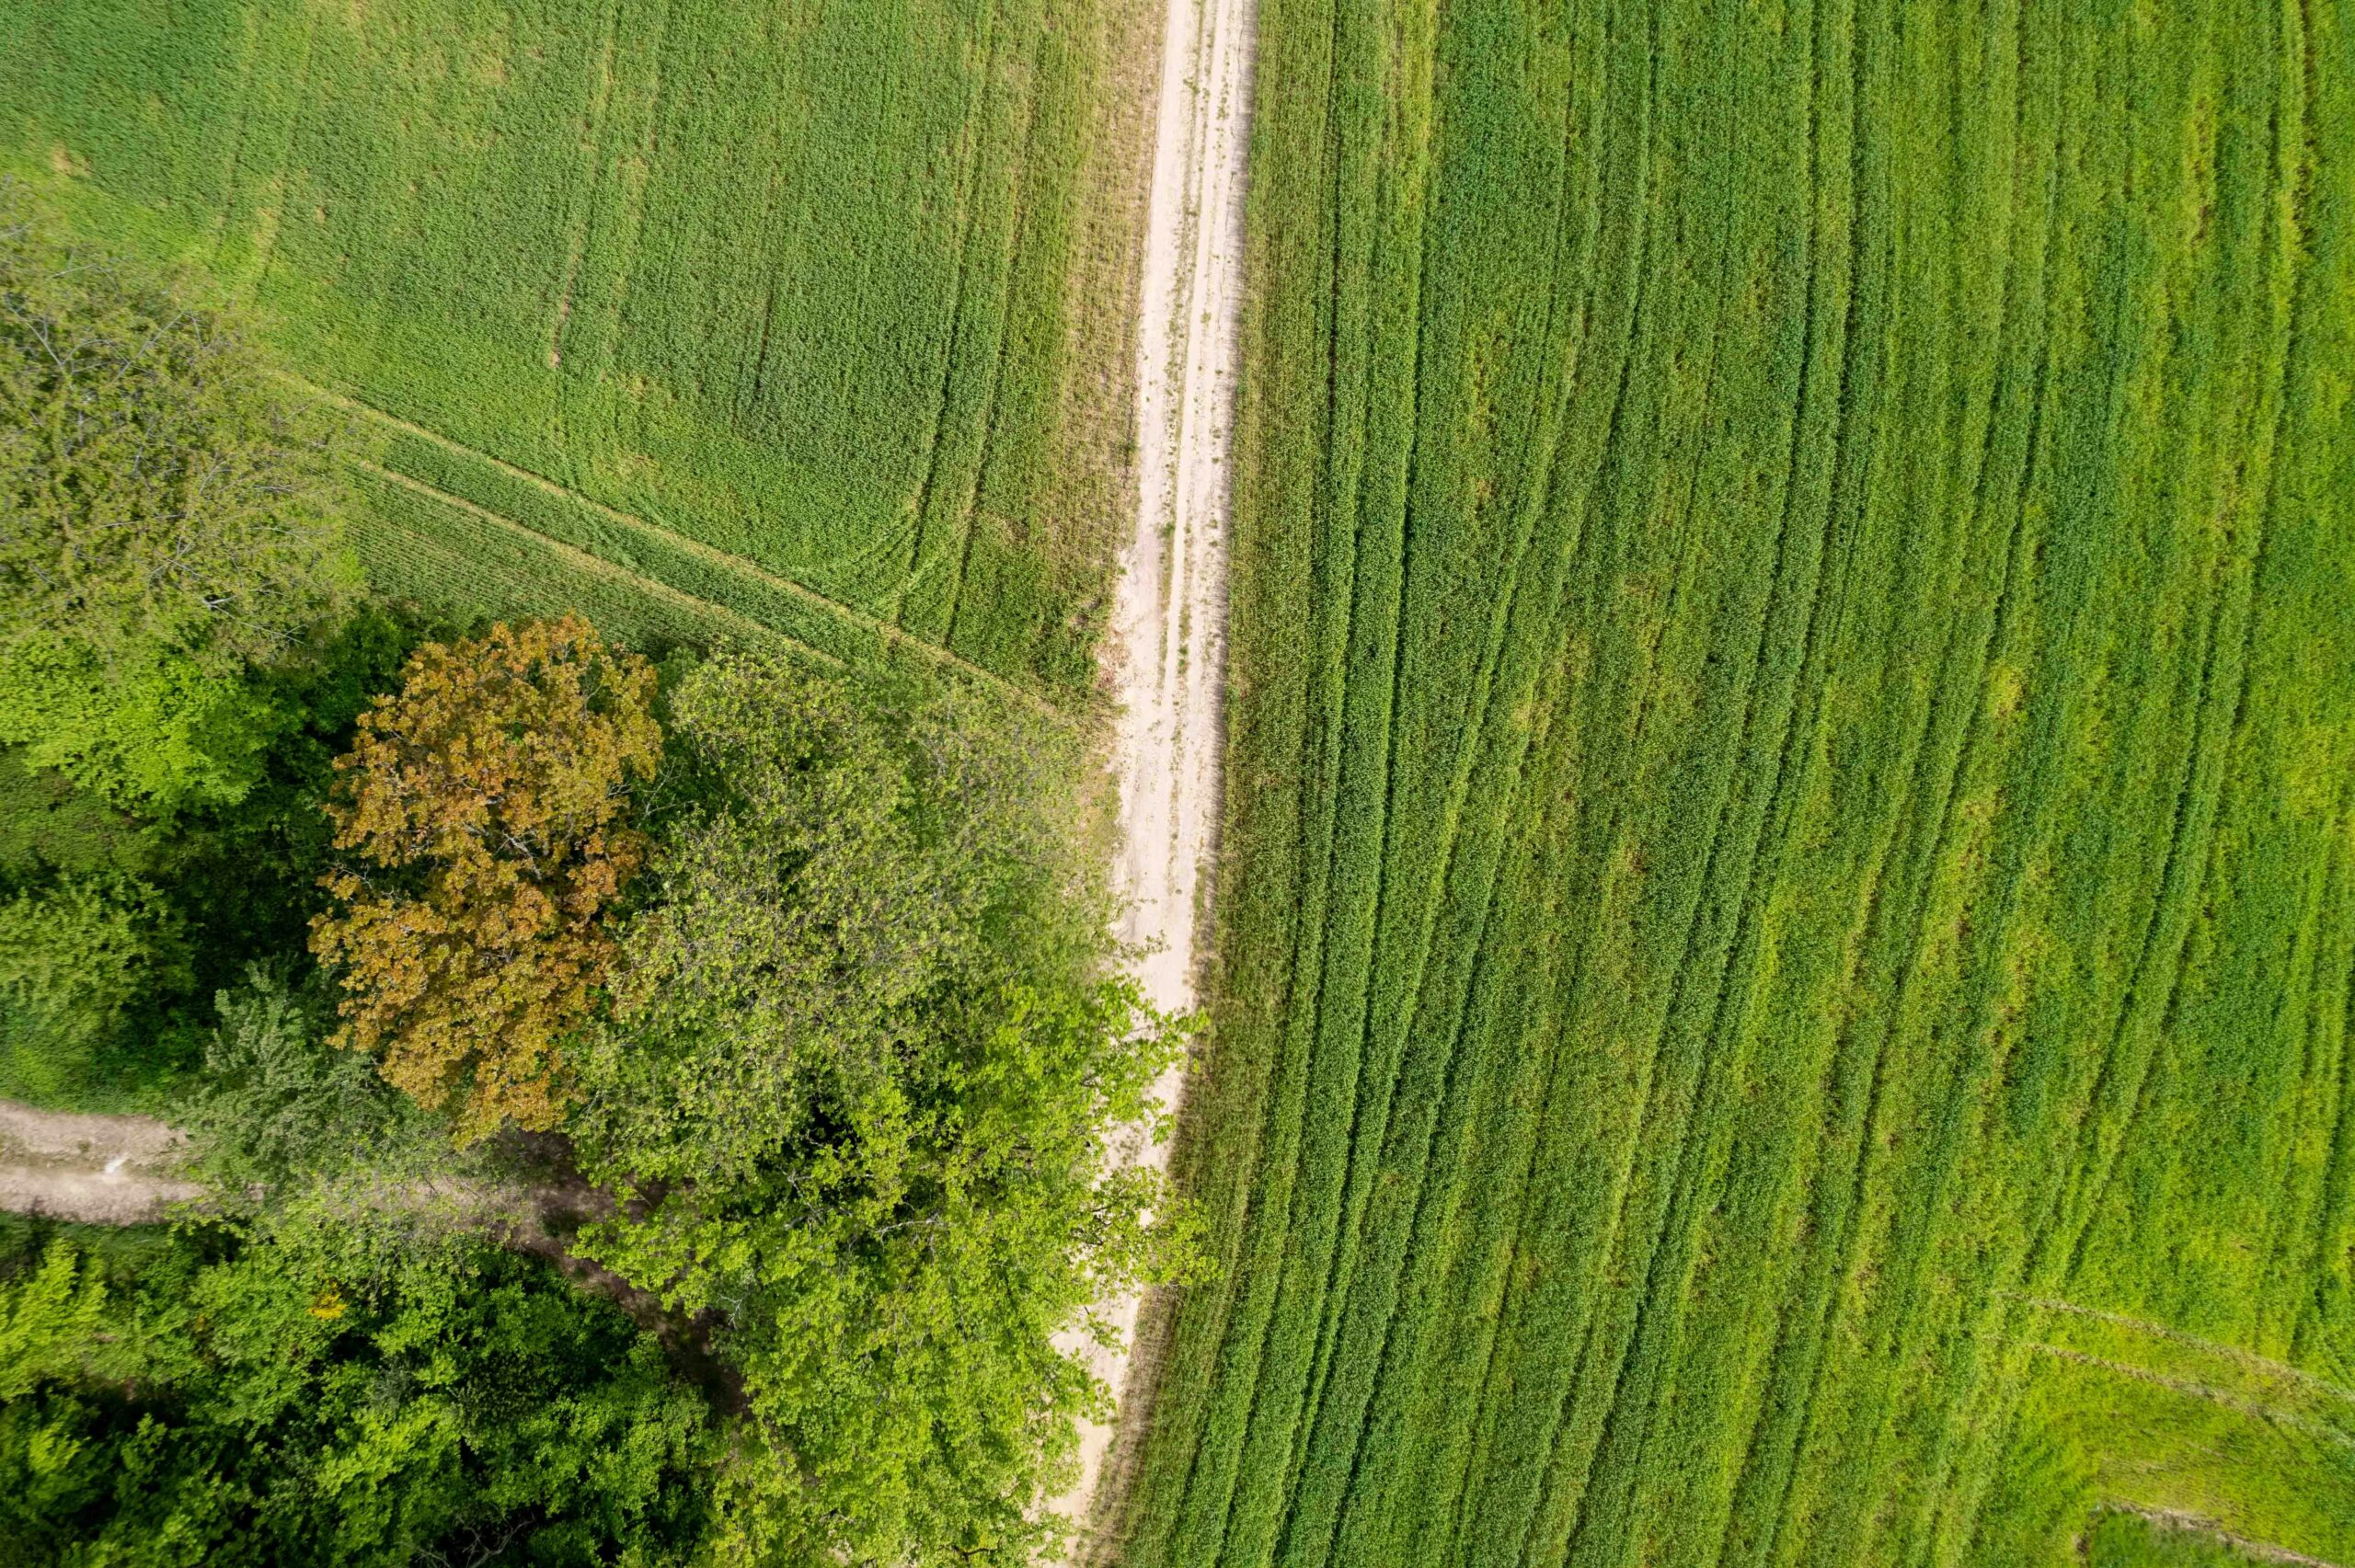 Luftaufnahme von Grünflächen, vertikal durchtrennt von einem Feldweg.